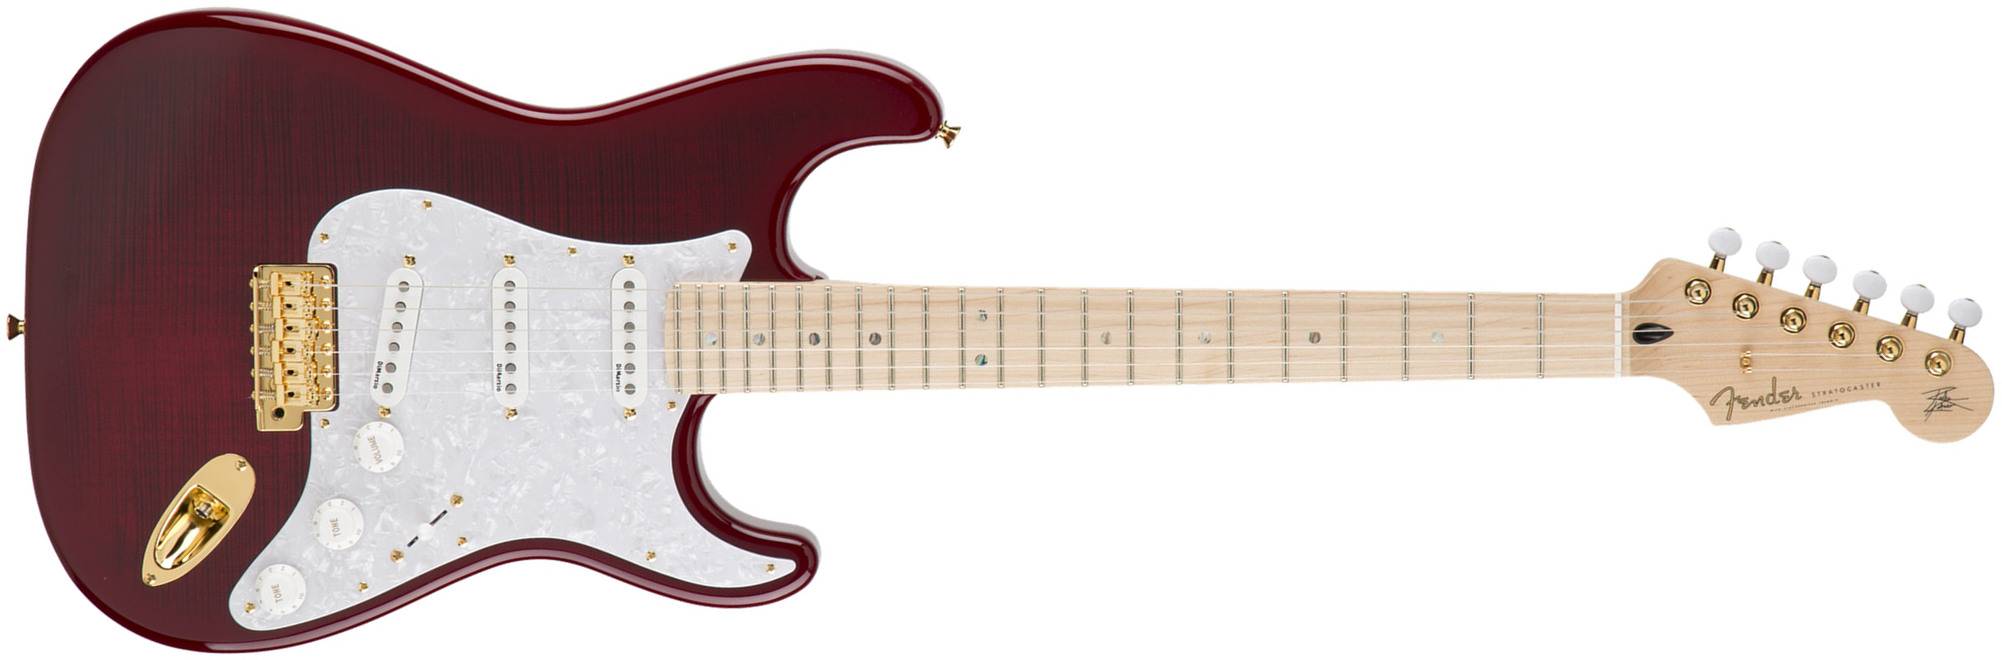 Fender Richie Kotzen Strat Japan Ltd 3s Mn - Transparent Red Burst - Elektrische gitaar in Str-vorm - Main picture